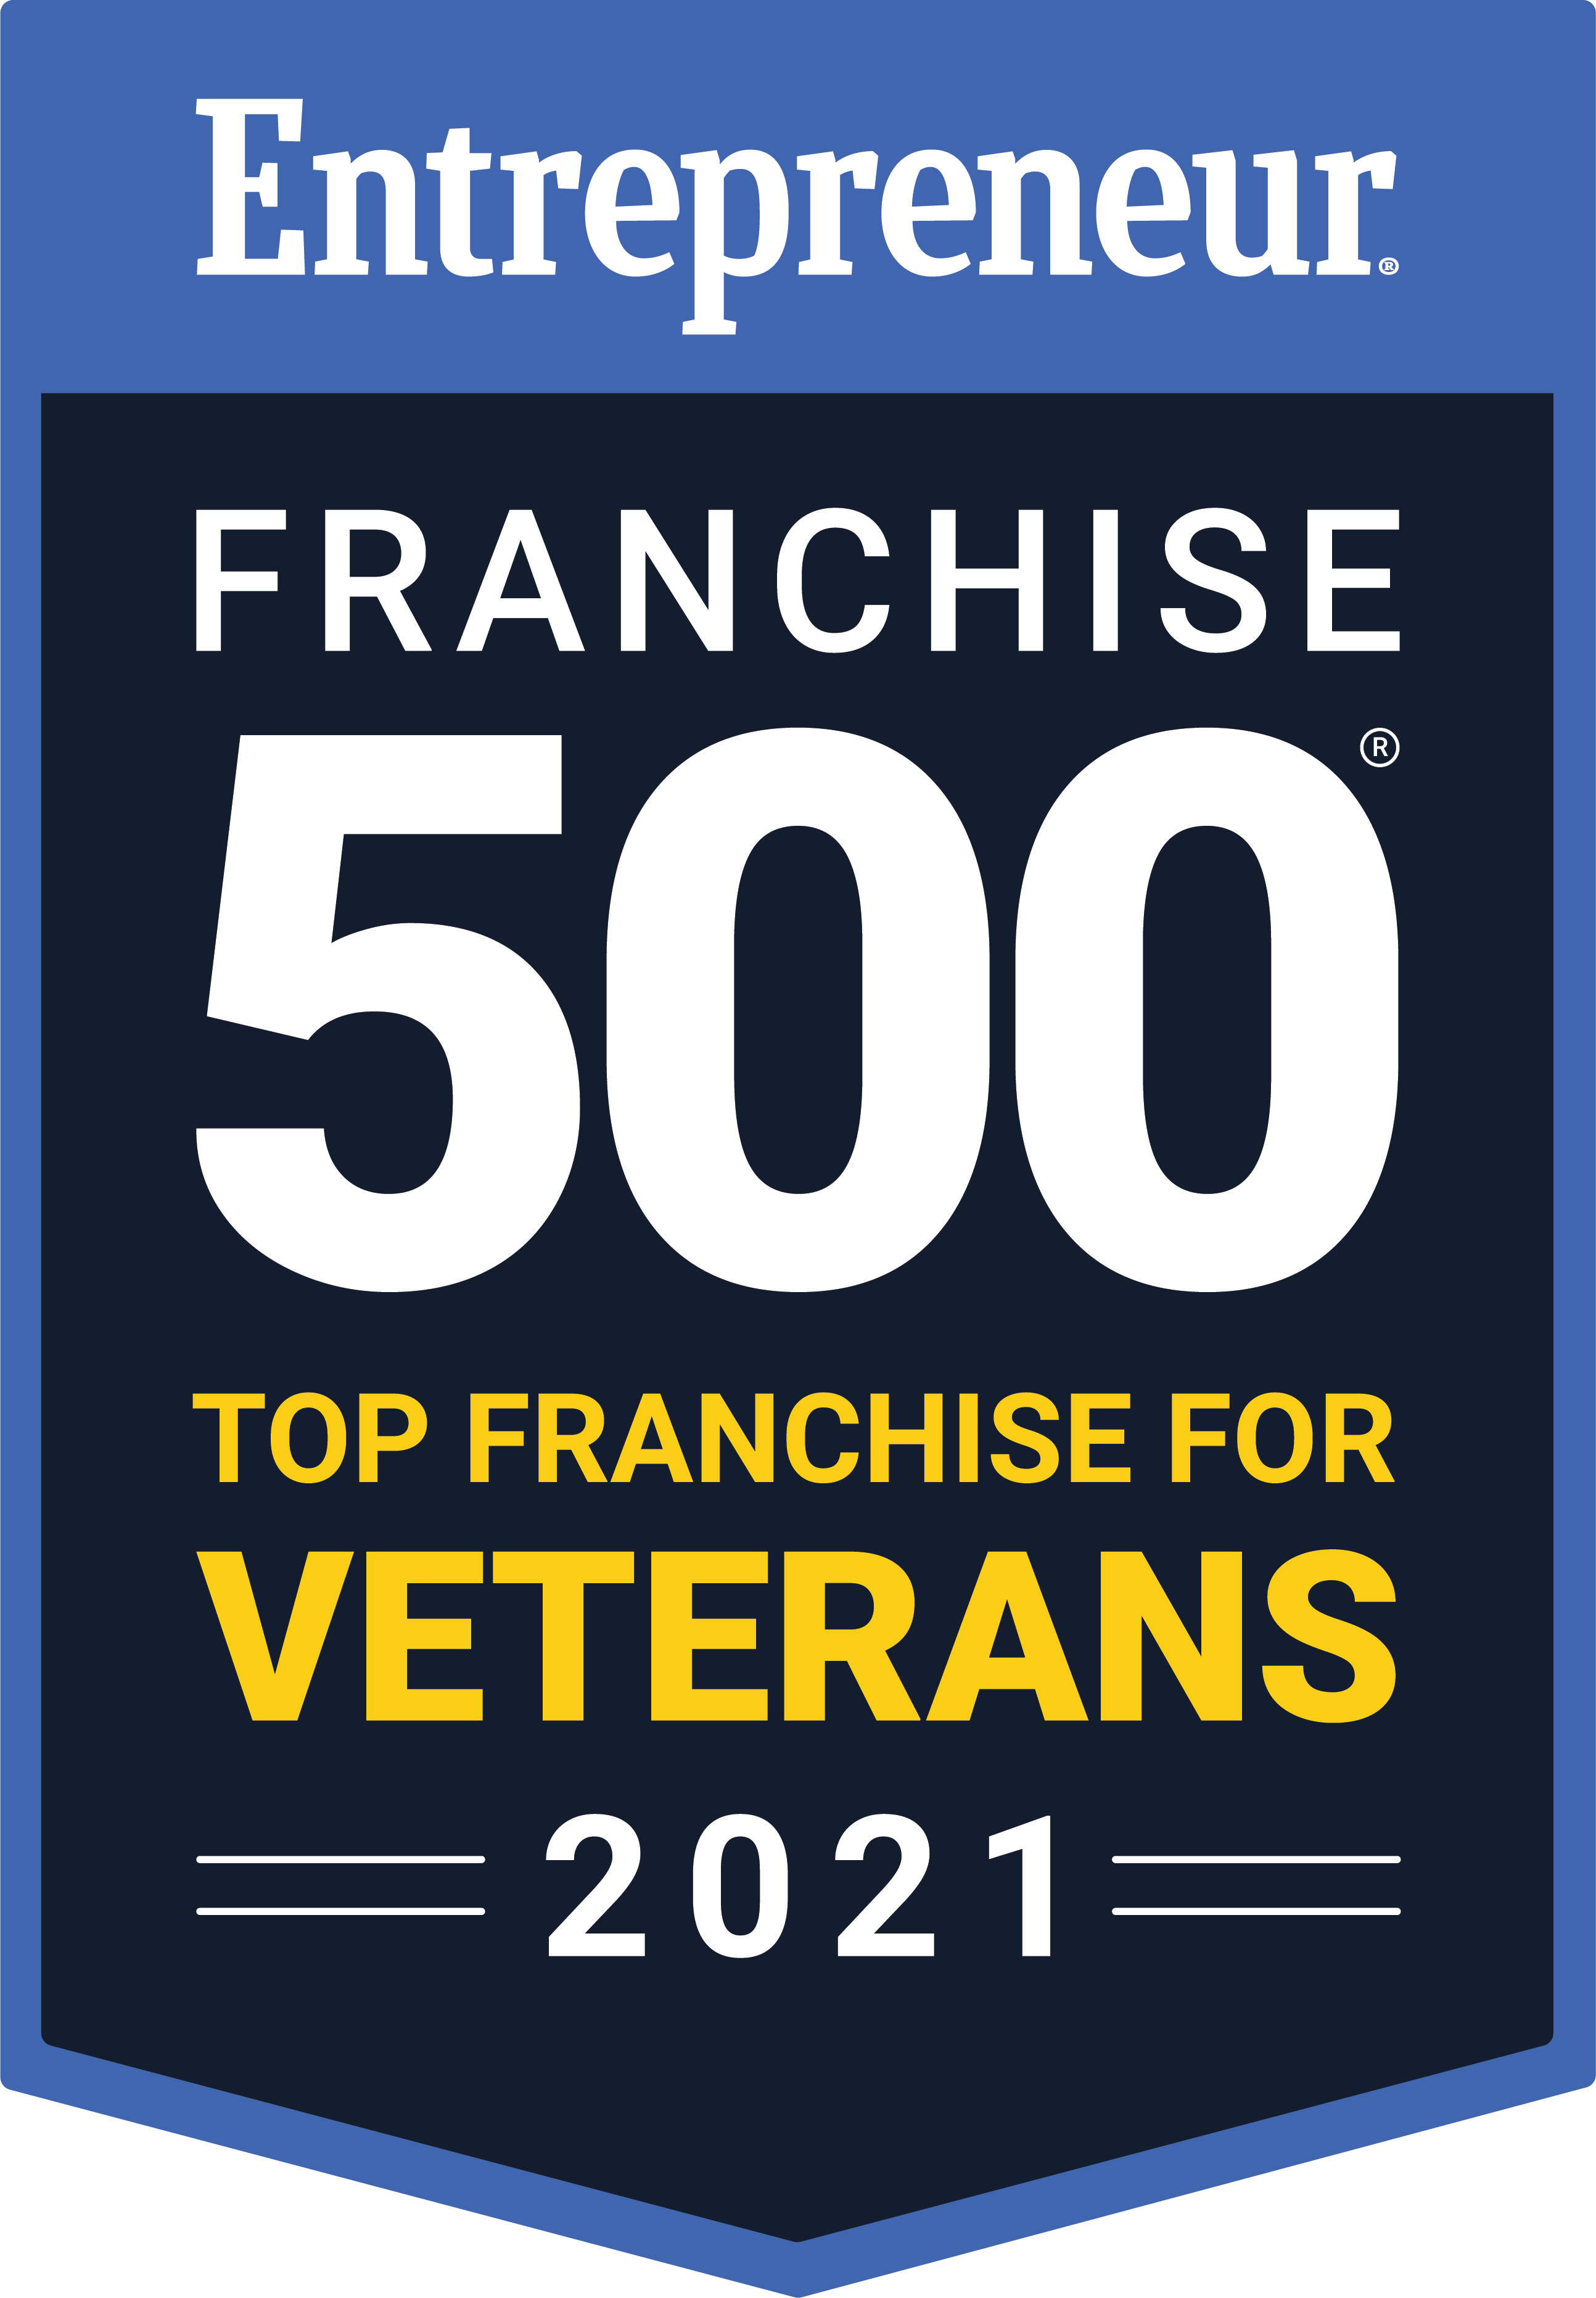 Franchise 500 Veterans